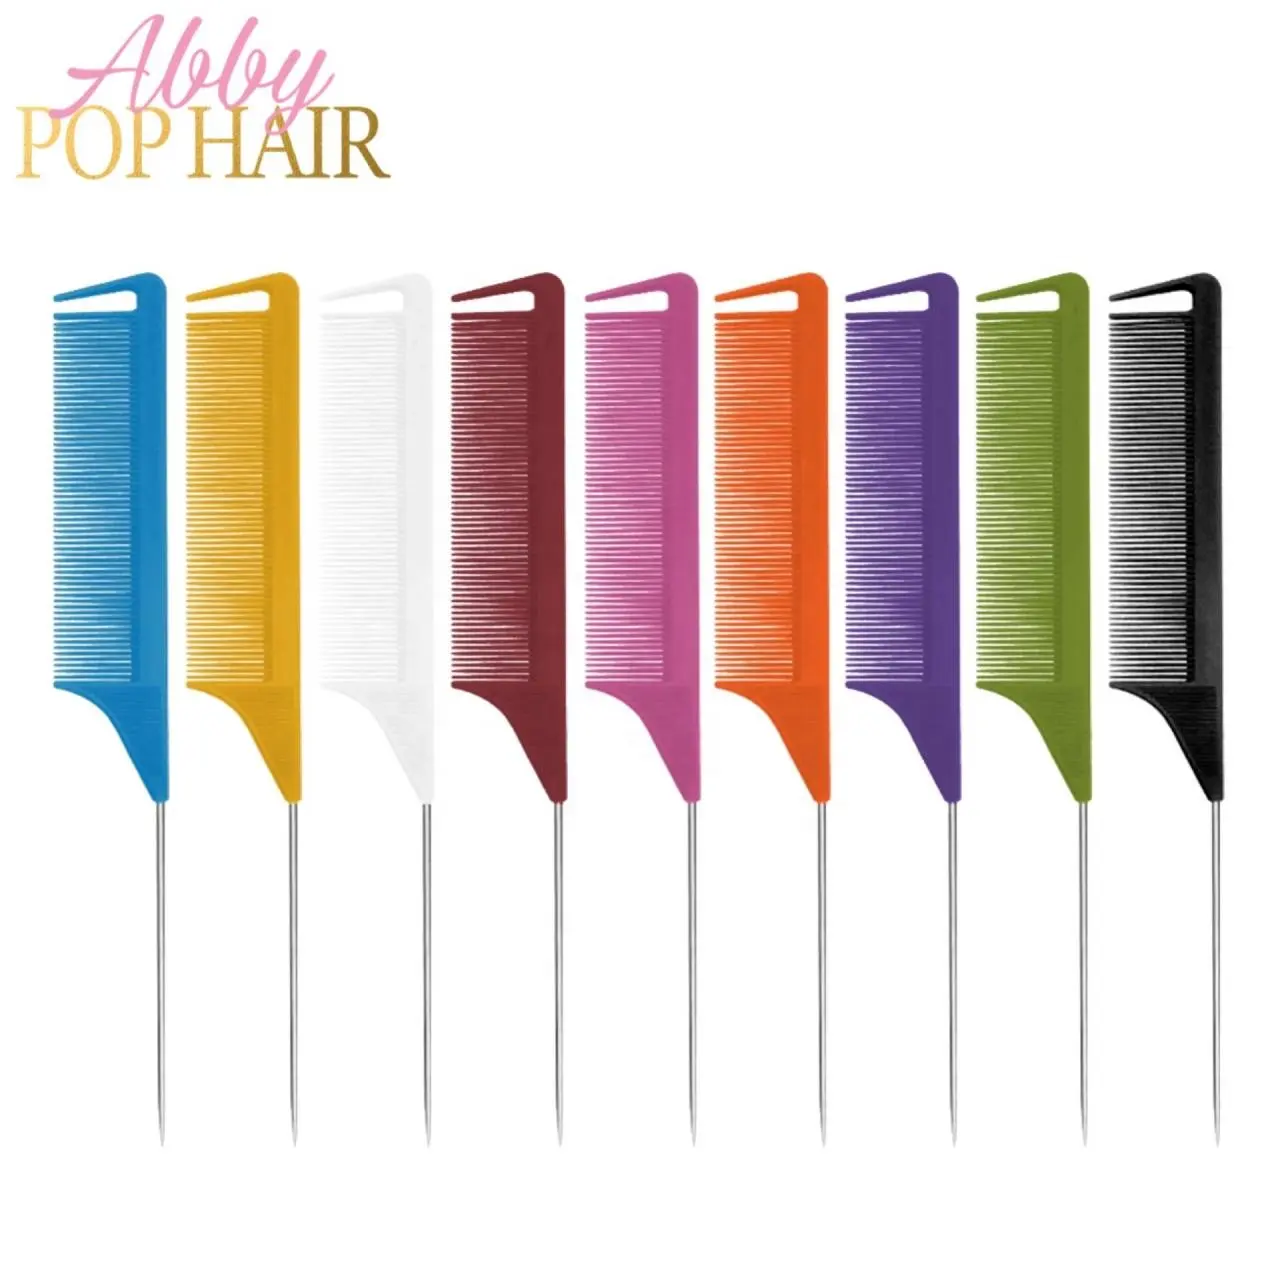 Logotipo personalizado styling separação pentes cabelo estilista anti estática resistente ao calor cauda pente salão penteado cabeleireiro